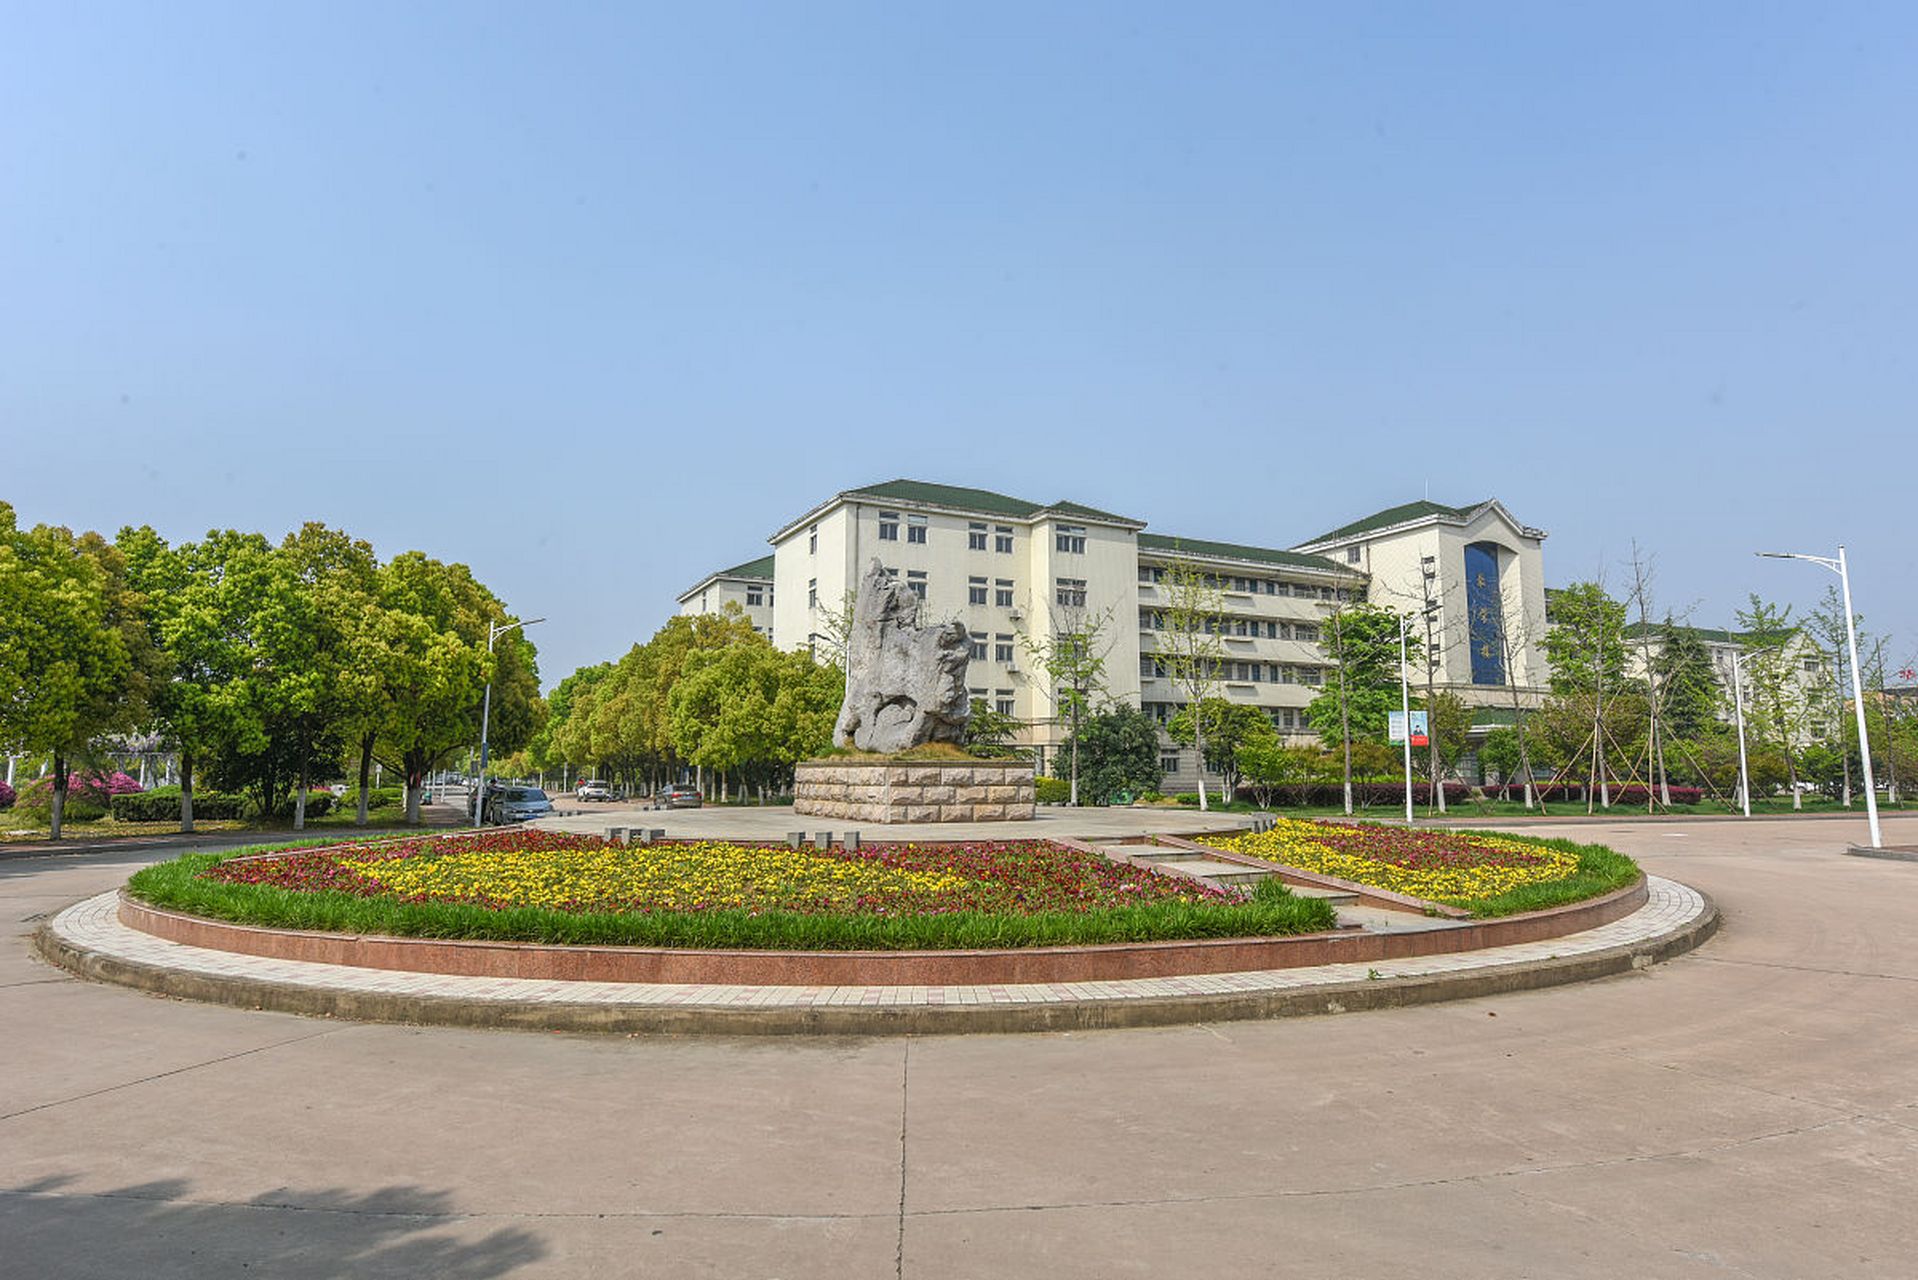 9999大连海事大学位于风景秀丽的辽宁省大连市,虽然不直接靠海